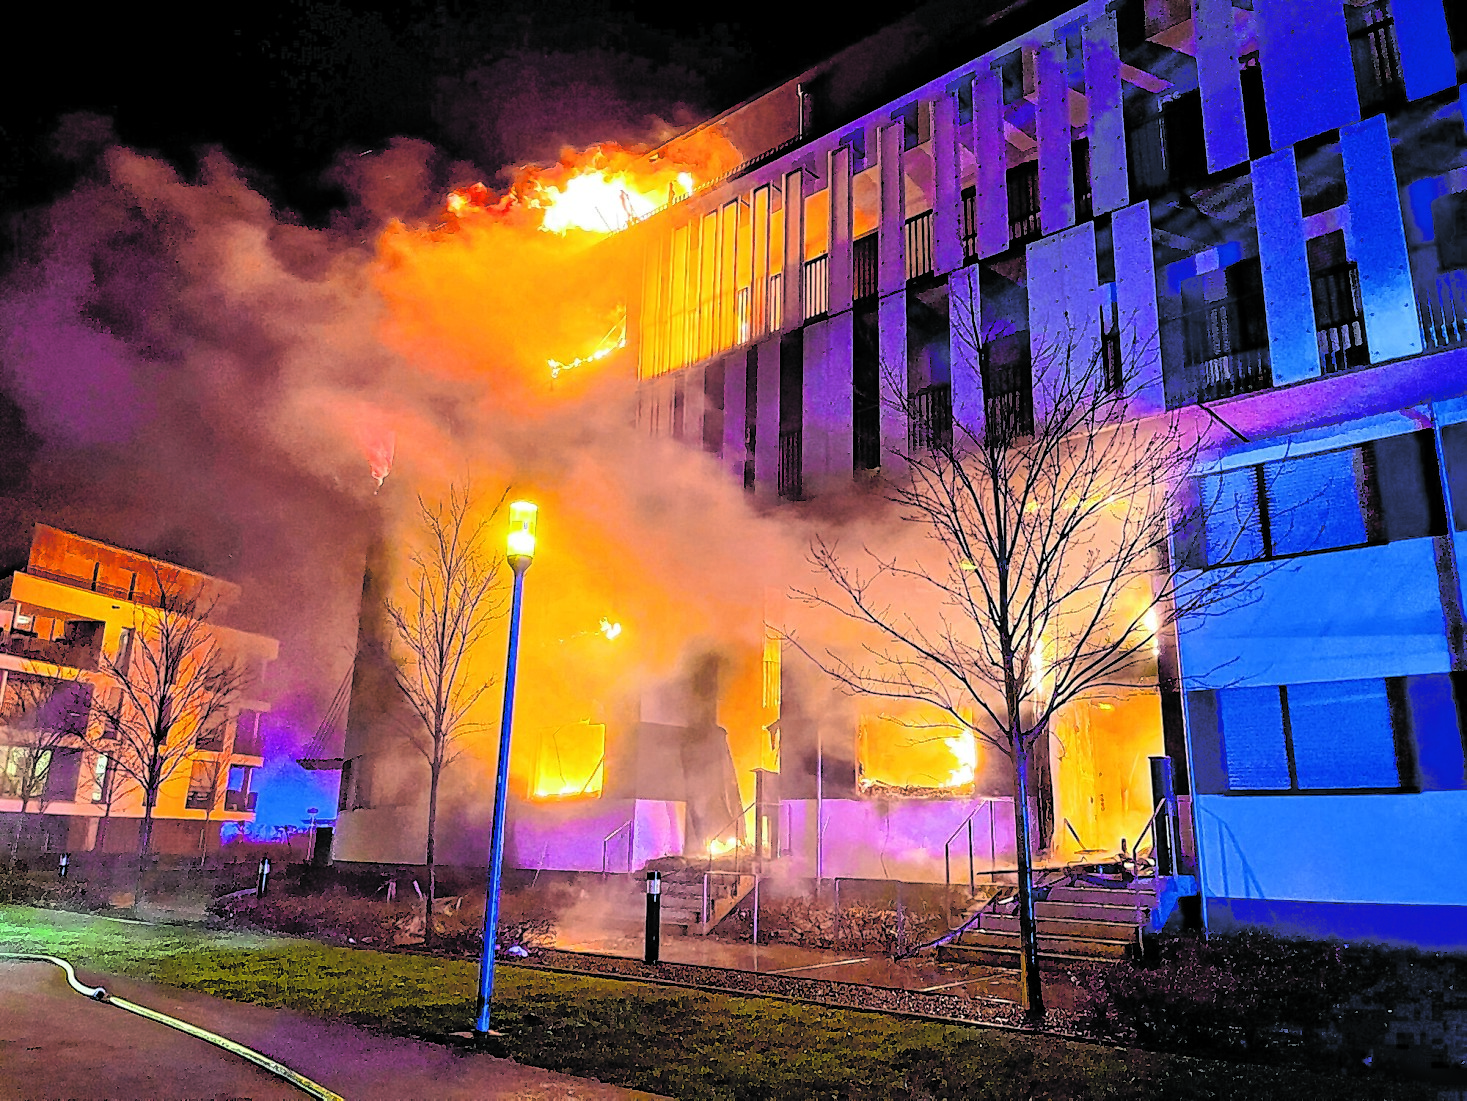 Wohnkomplex in Essen brennt